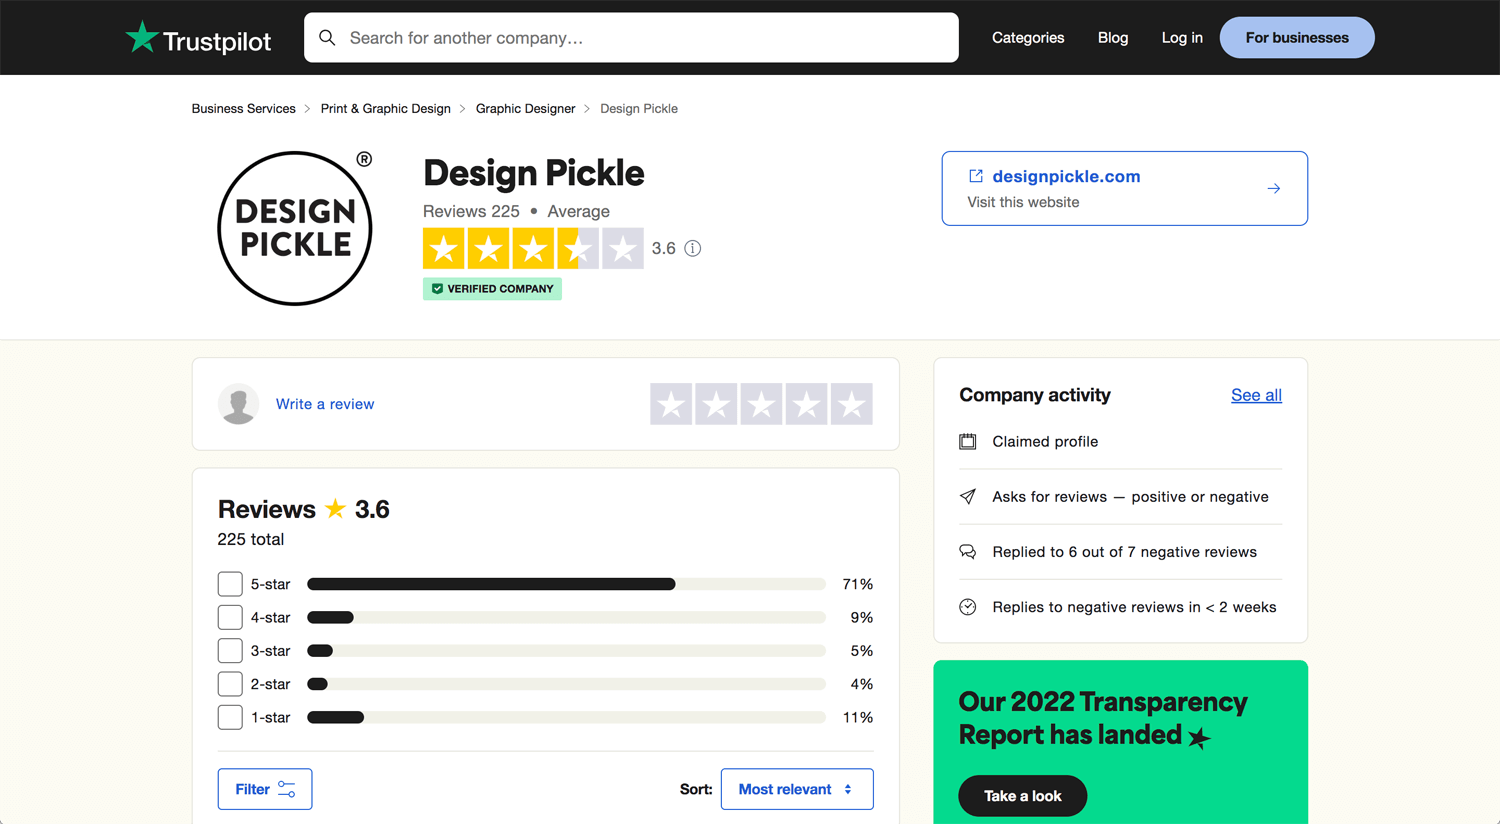 Blog Open Bookmarks Co. Design Subscription Design Pickle